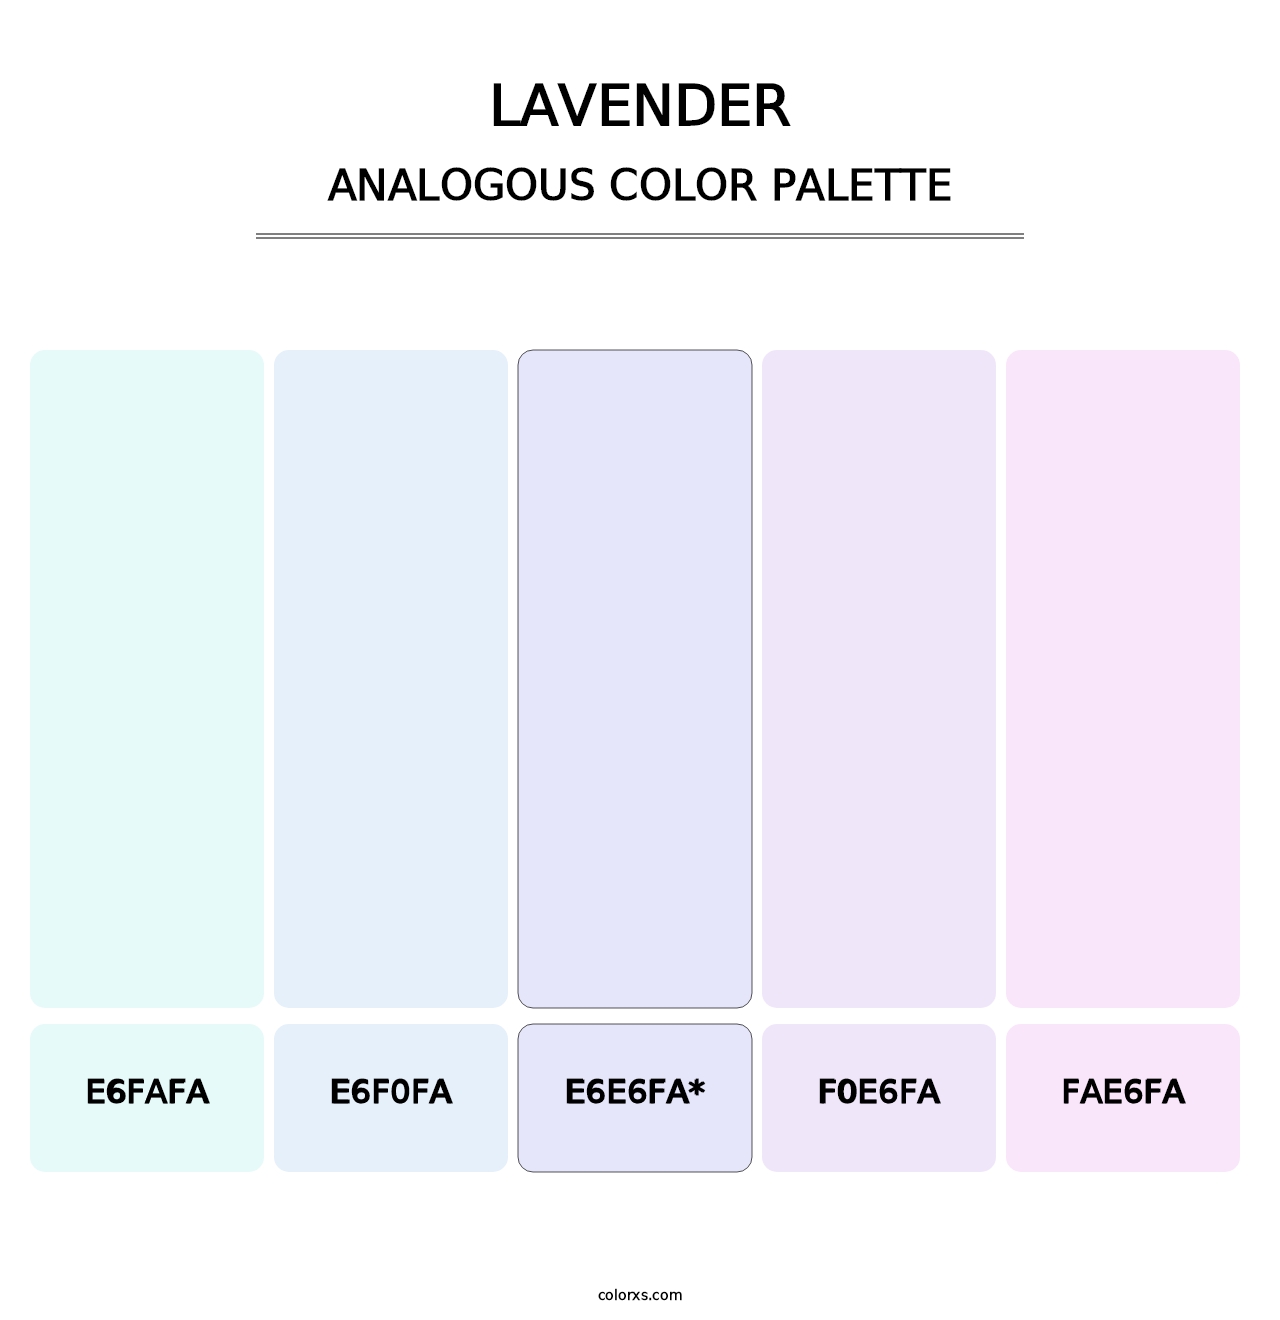 Lavender - Analogous Color Palette